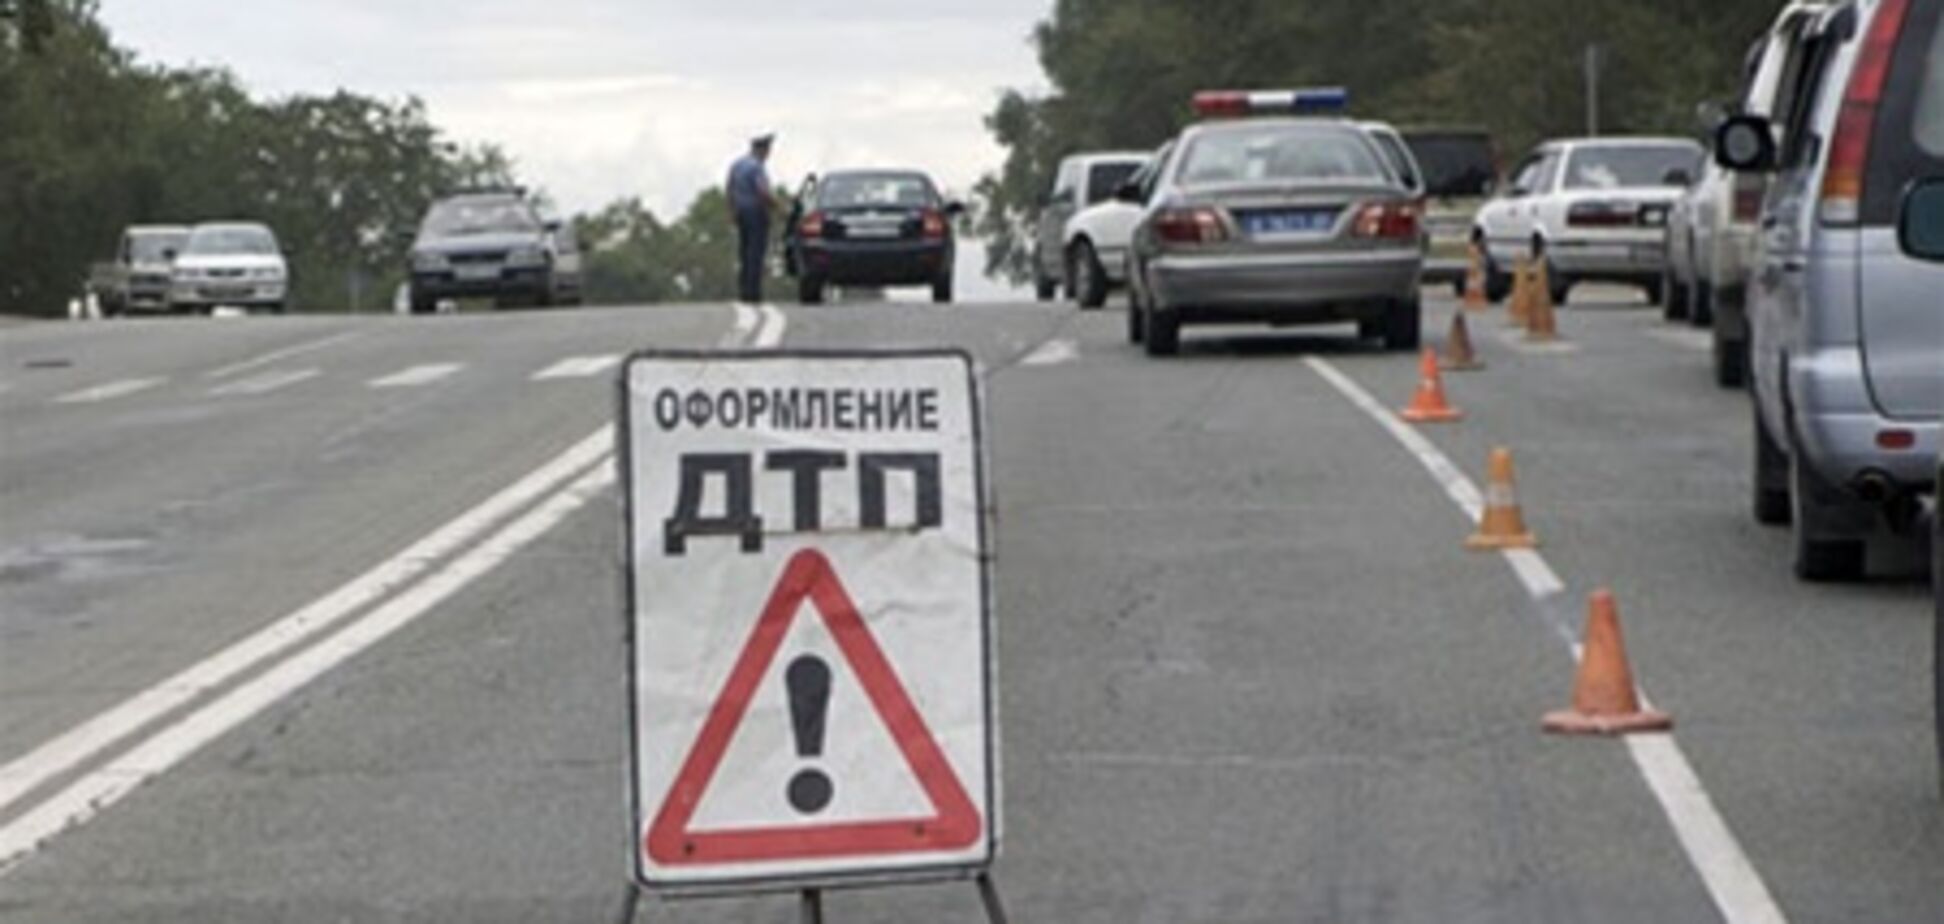 Автомобиль представителя Медведева совершил лобовое столкновение